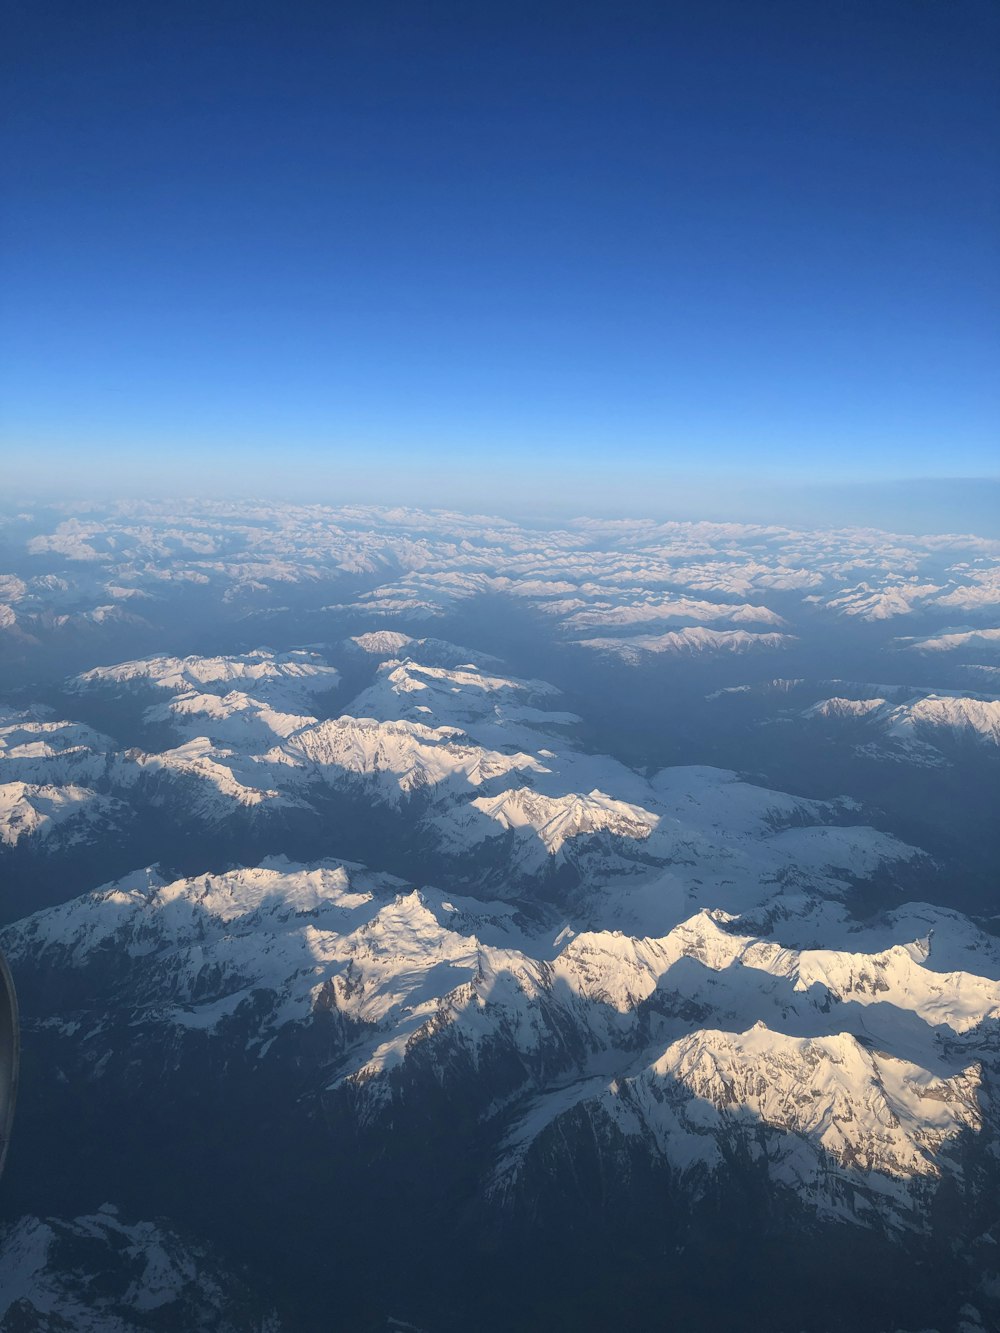 montagne couverte de neige pendant la photographie de vue de dessus de jour